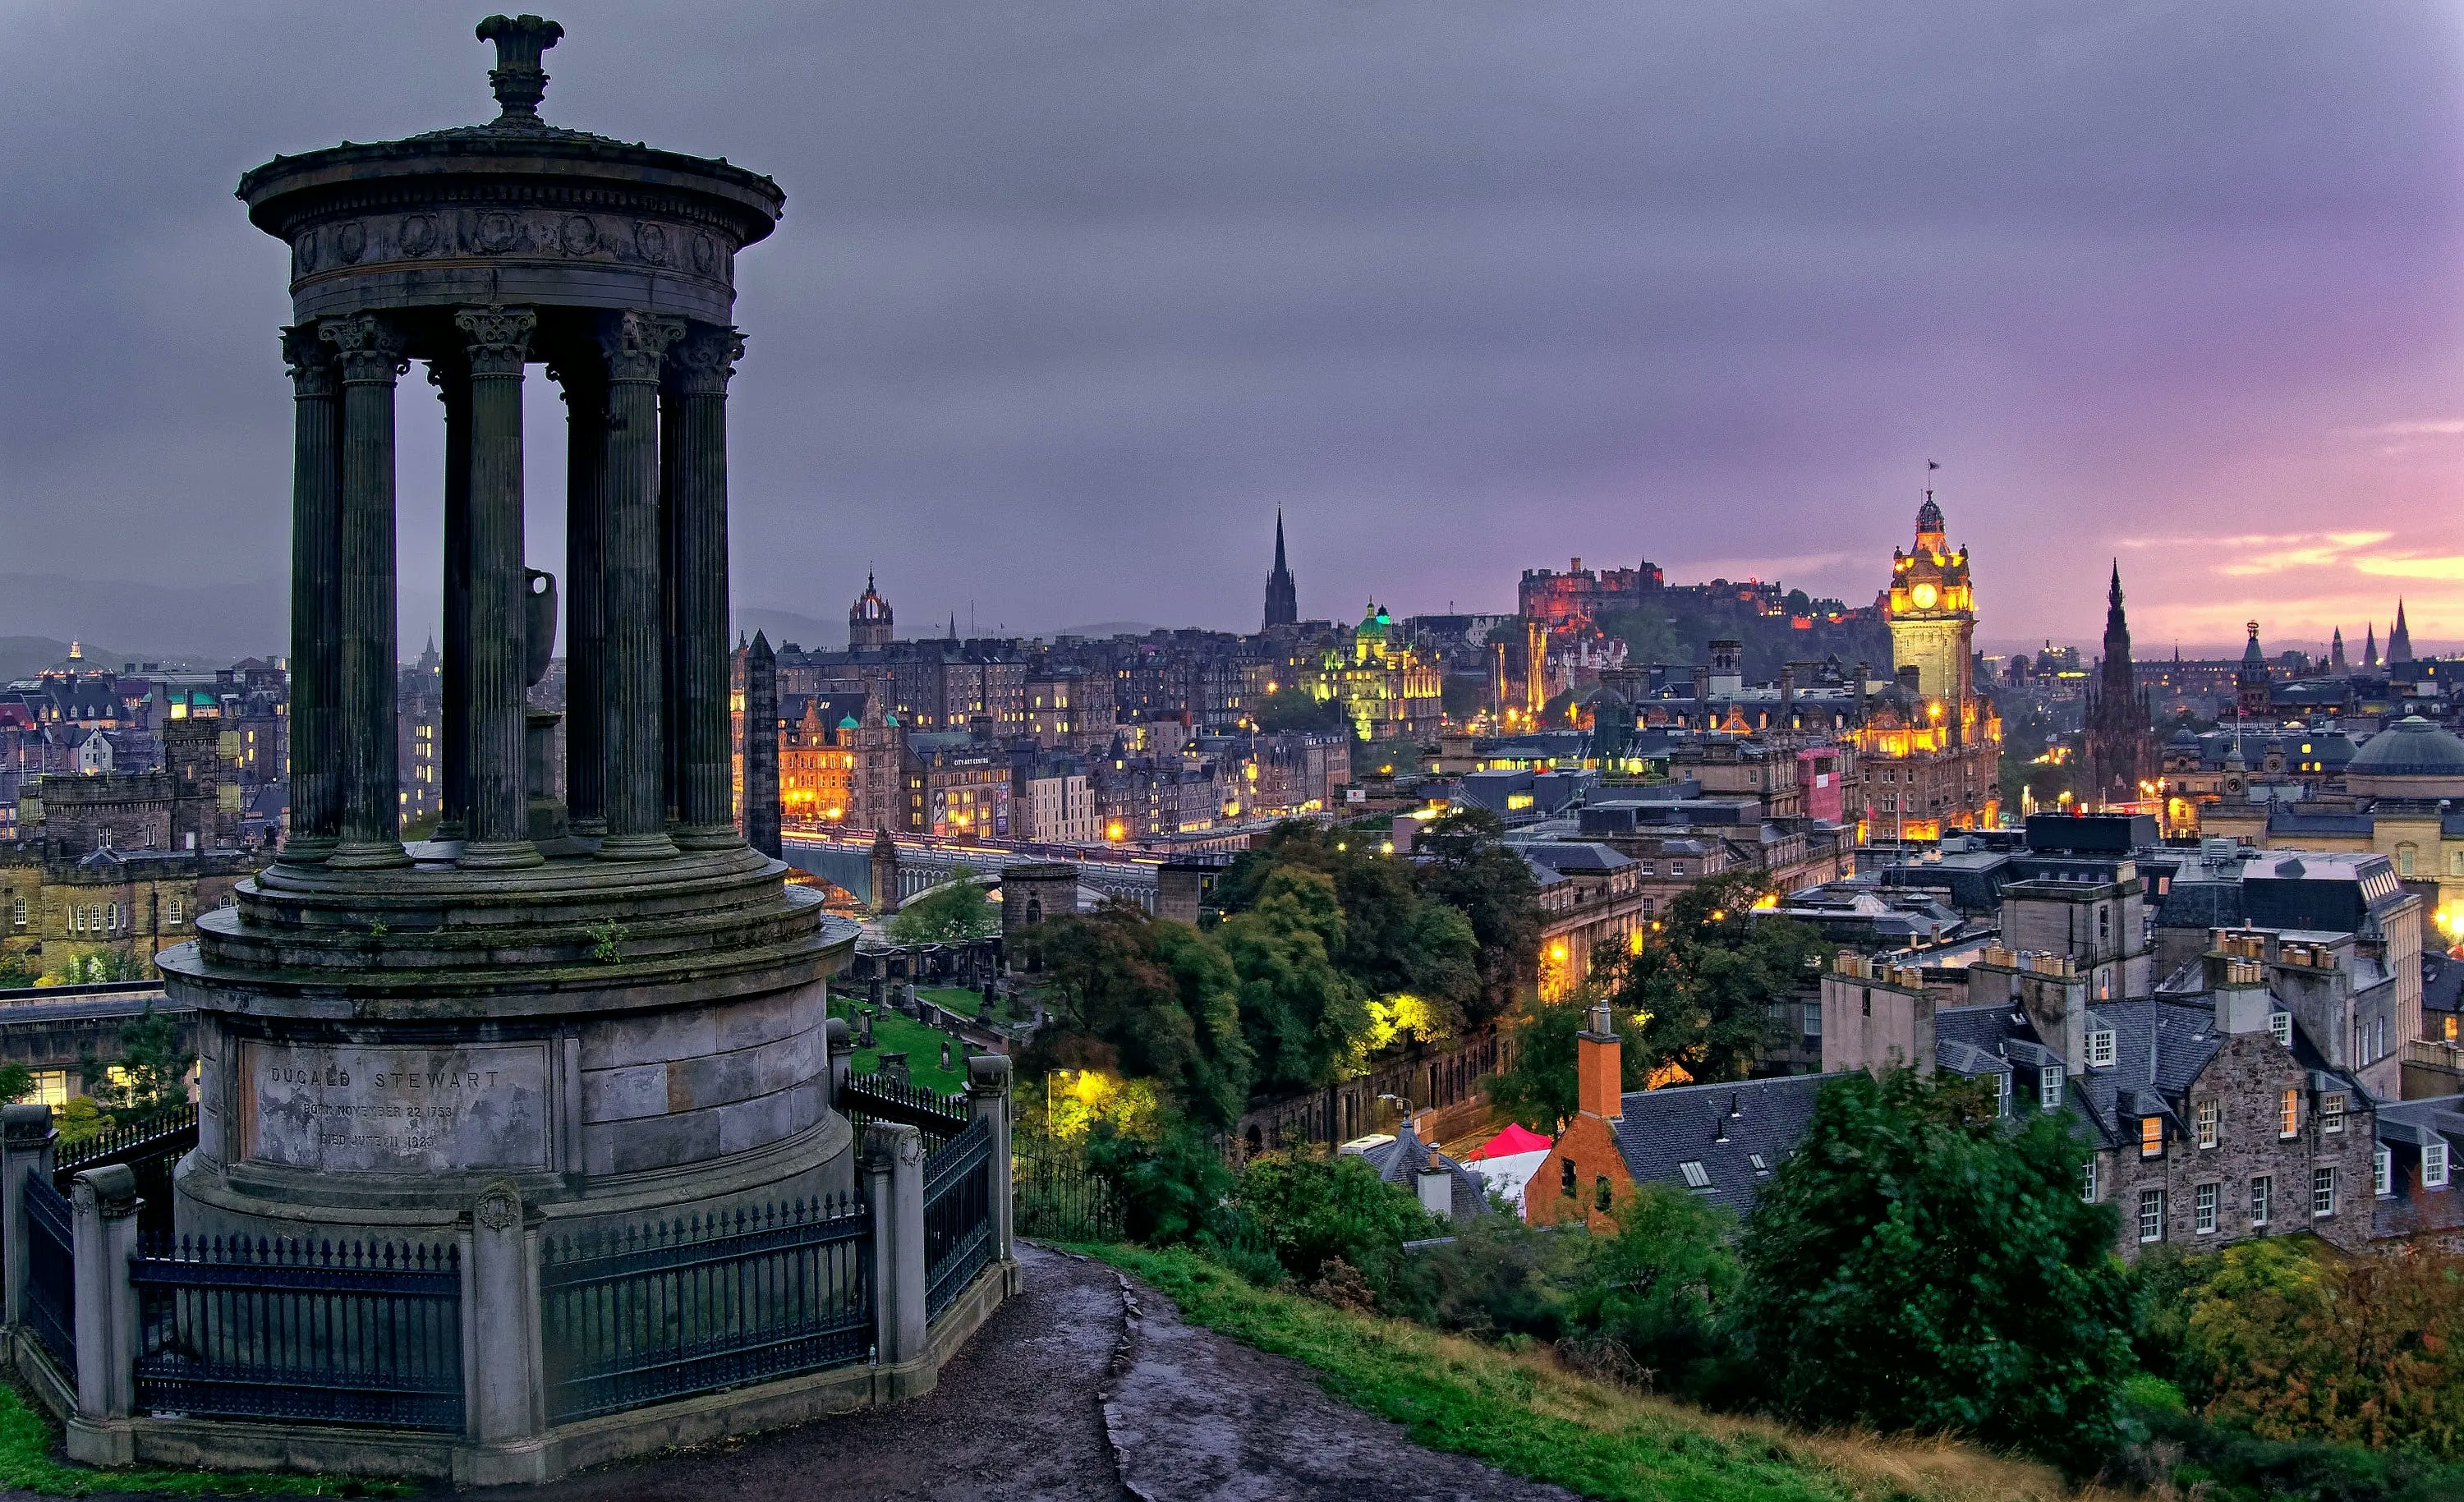 Edinburgh Tourist Information